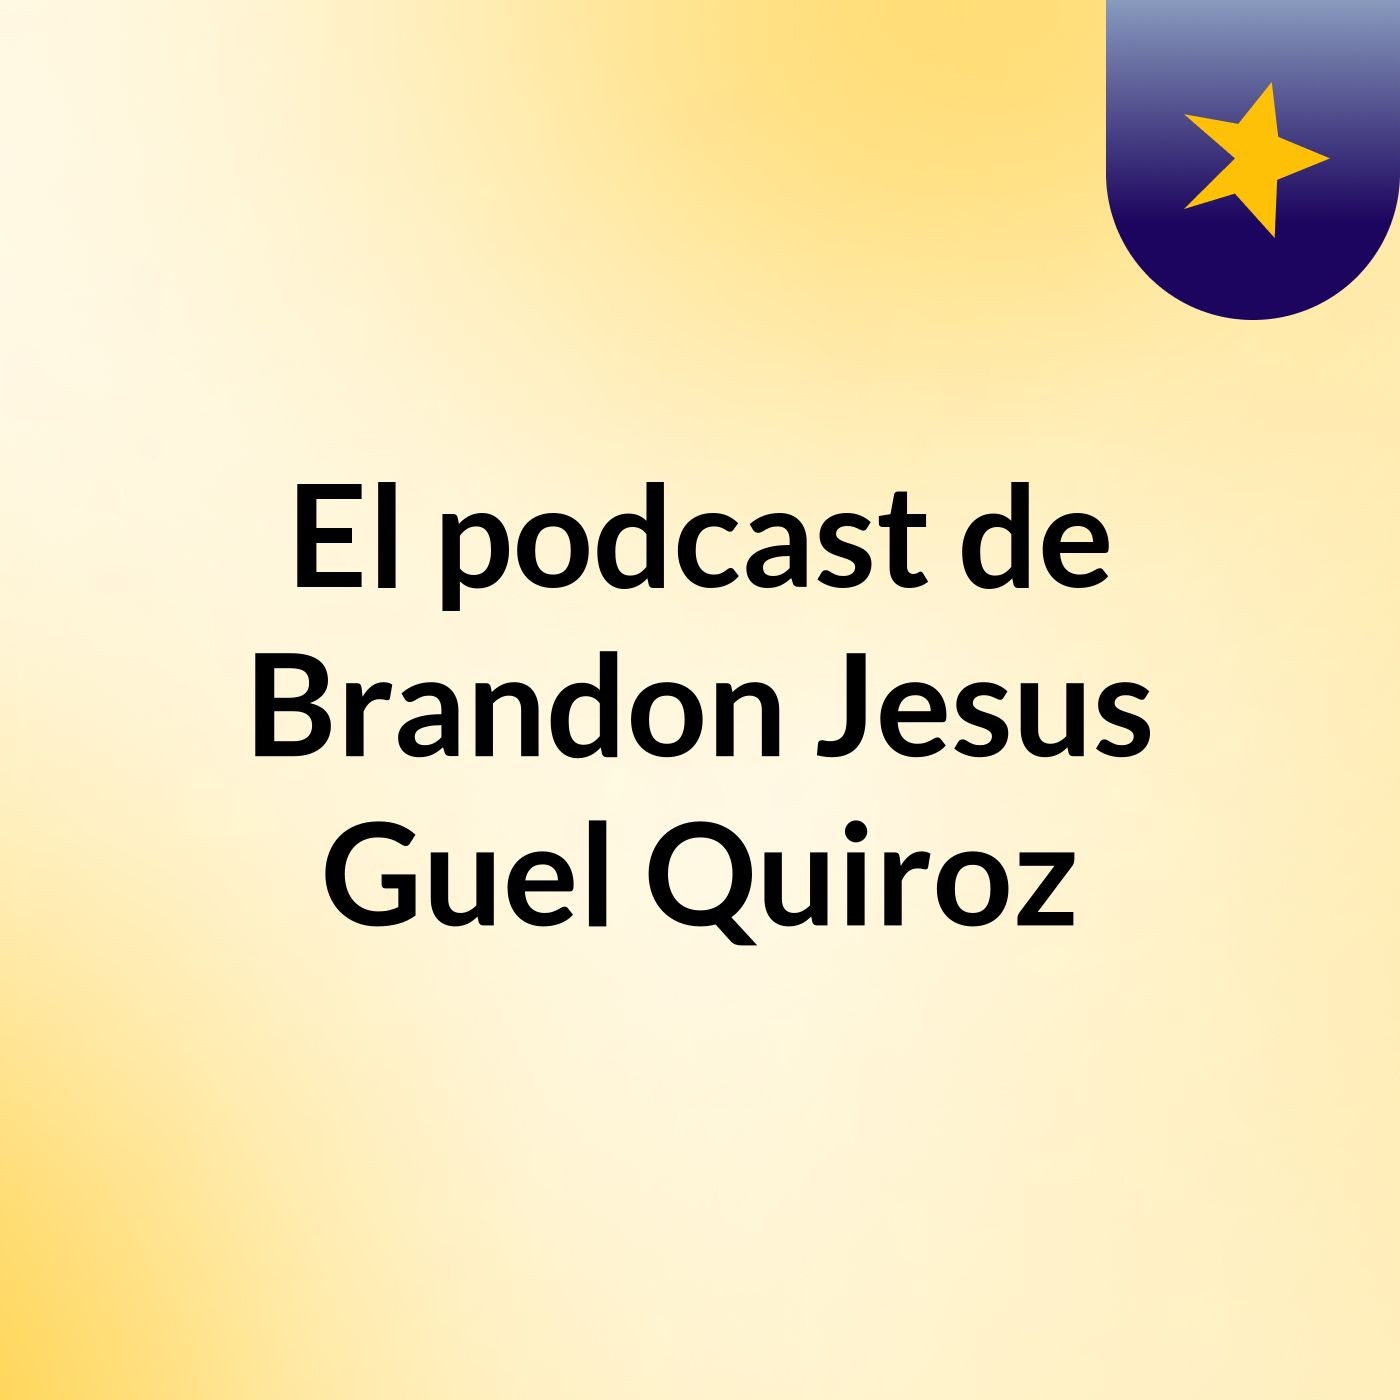 El podcast de Brandon Jesus Guel Quiroz